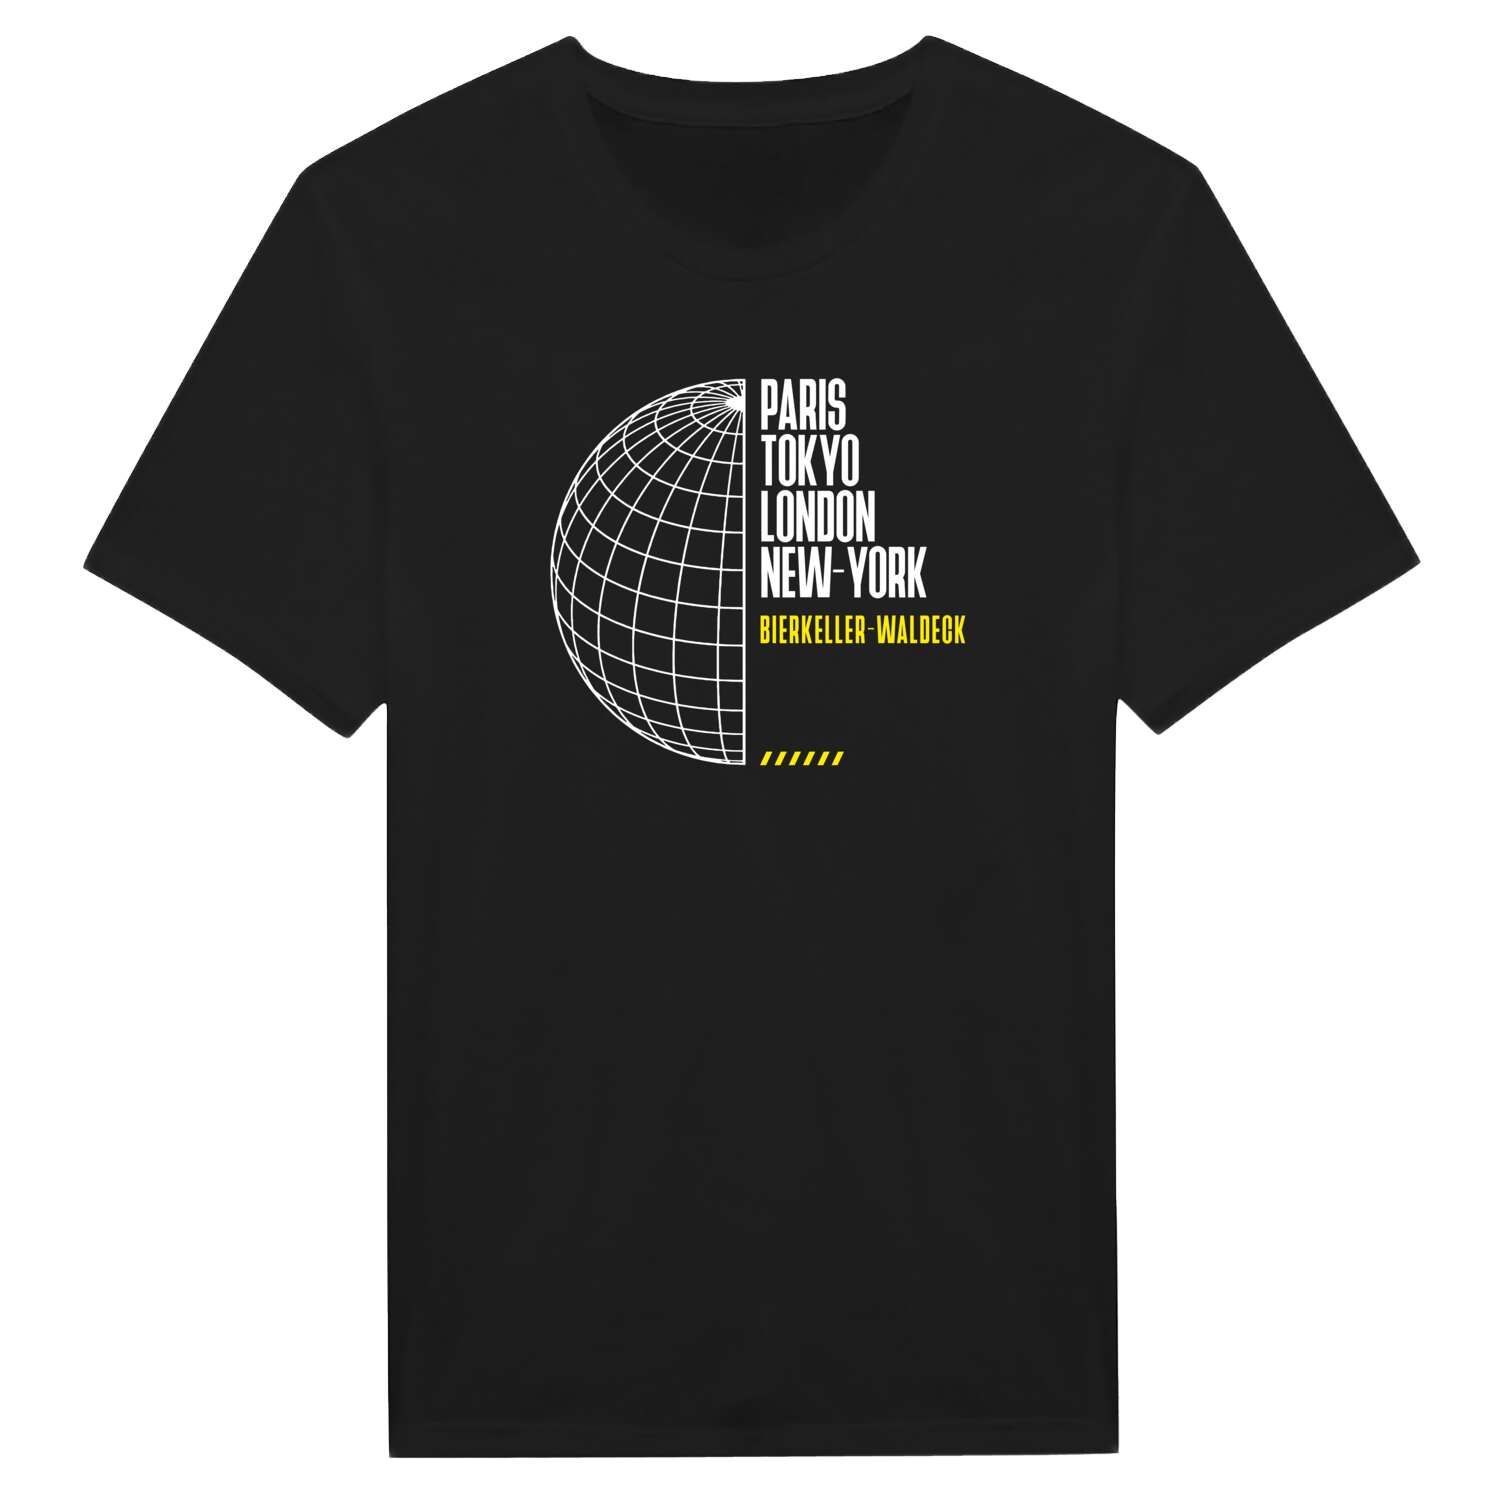 Bierkeller-Waldeck T-Shirt »Paris Tokyo London«